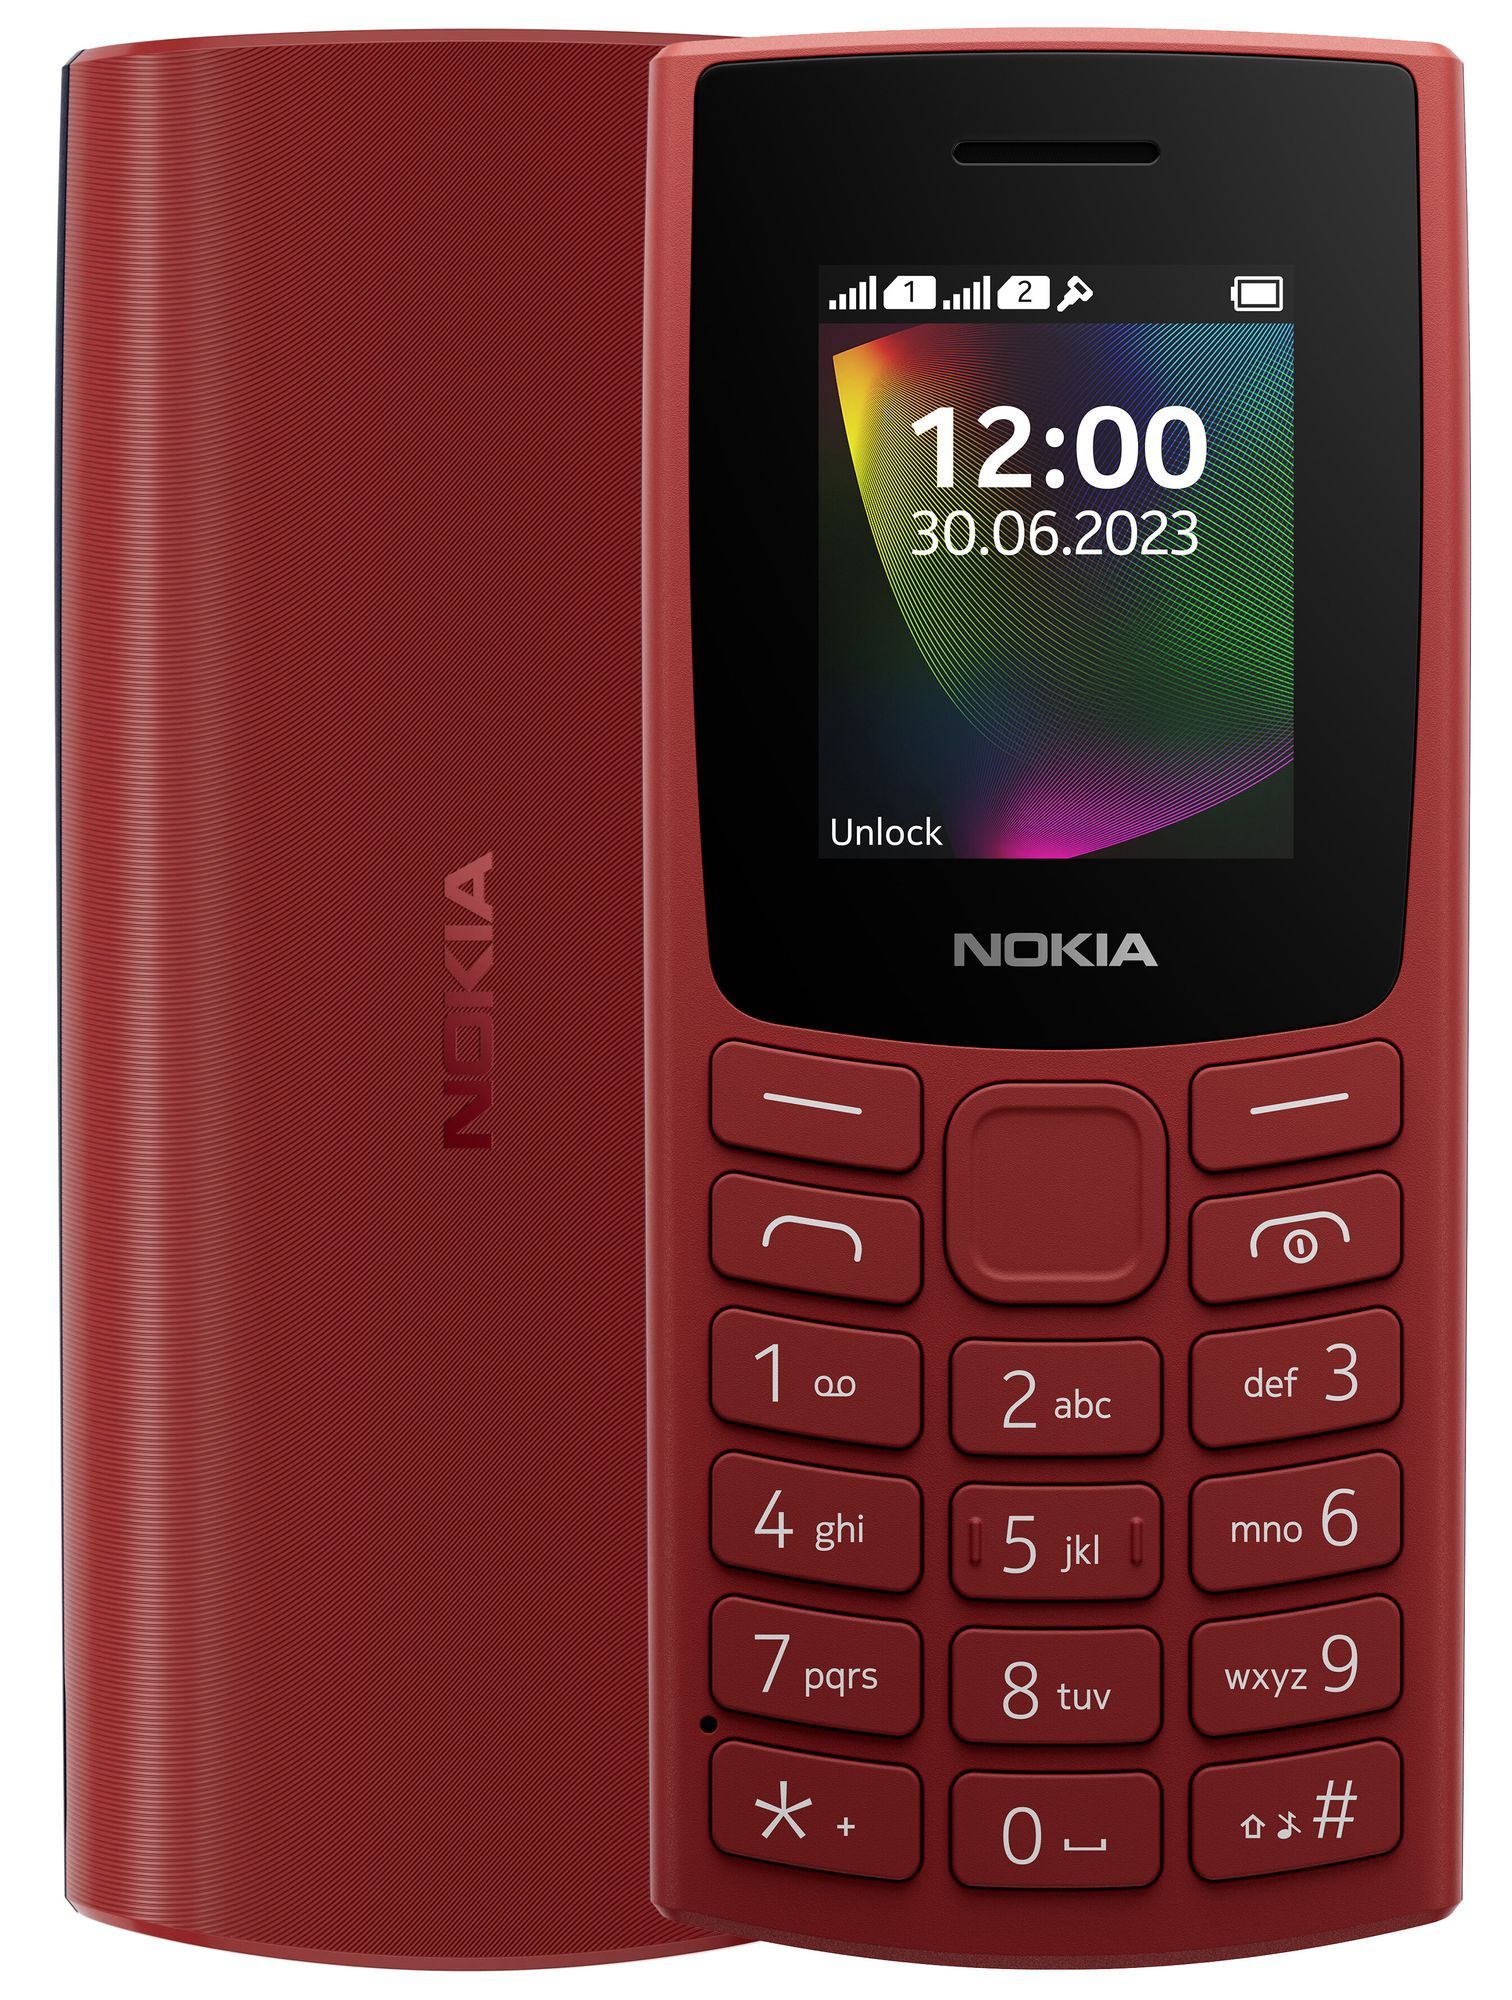 Мобильный телефон Nokia 106 (TA-1564) DS EAC Red мобильный телефон nokia 105 ta 1557 ds eac red